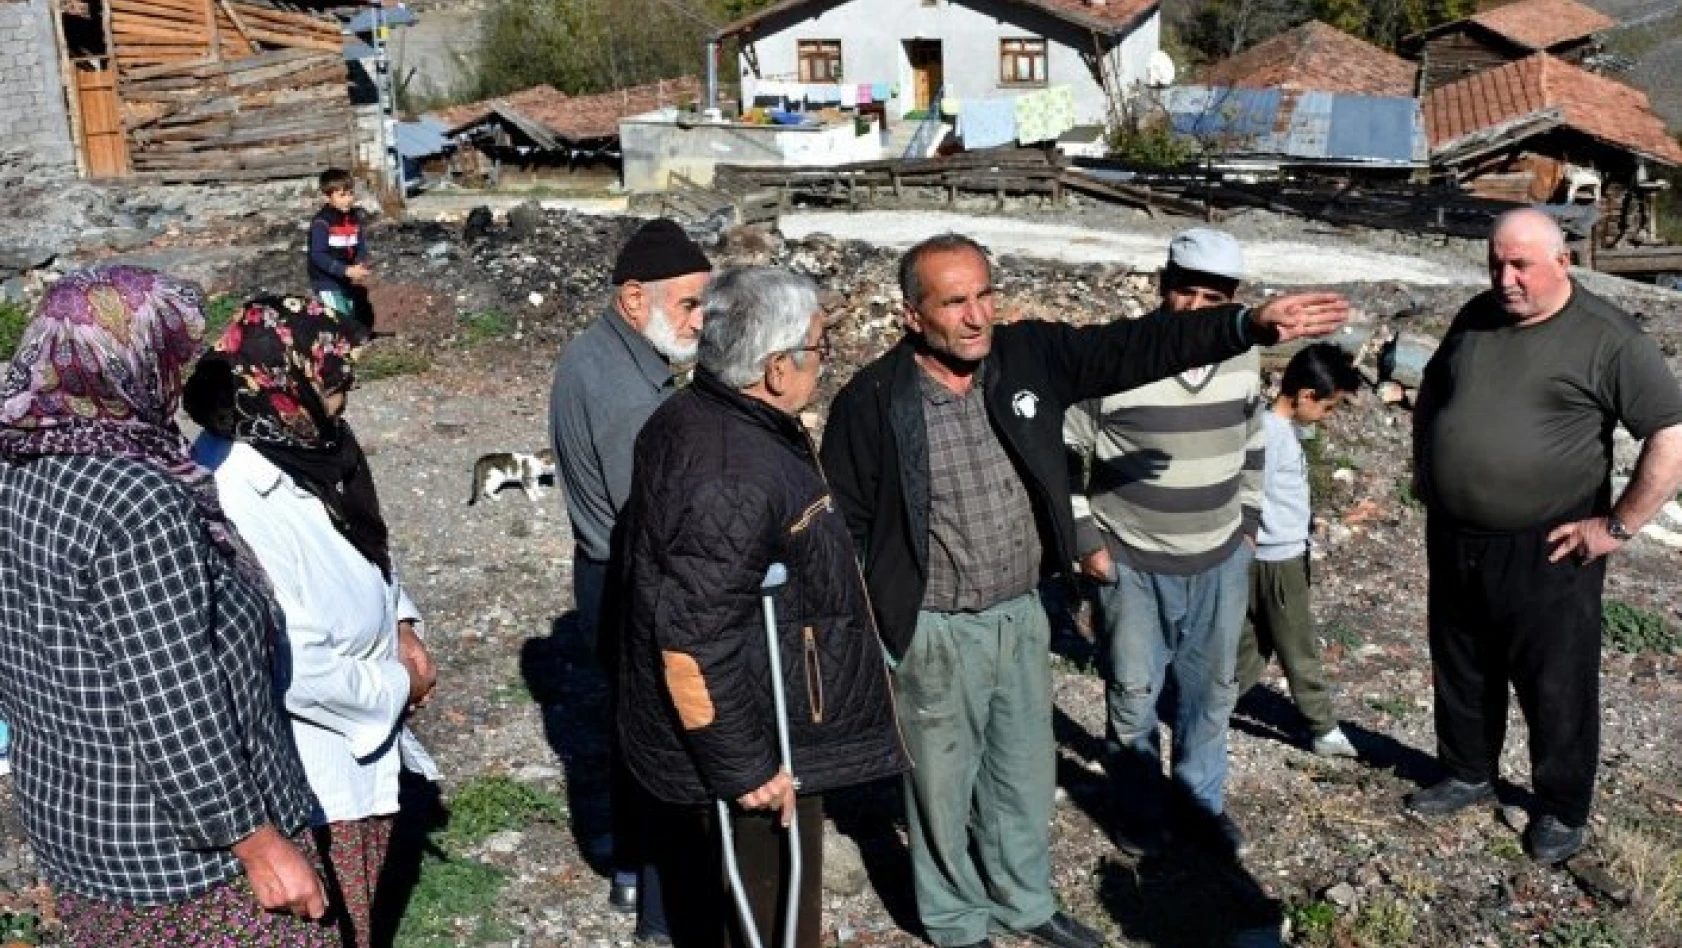 8 evin yandığı, 1 kişinin hayatını kaybettiği köyde, vatandaşlar kışa evsiz giriyor